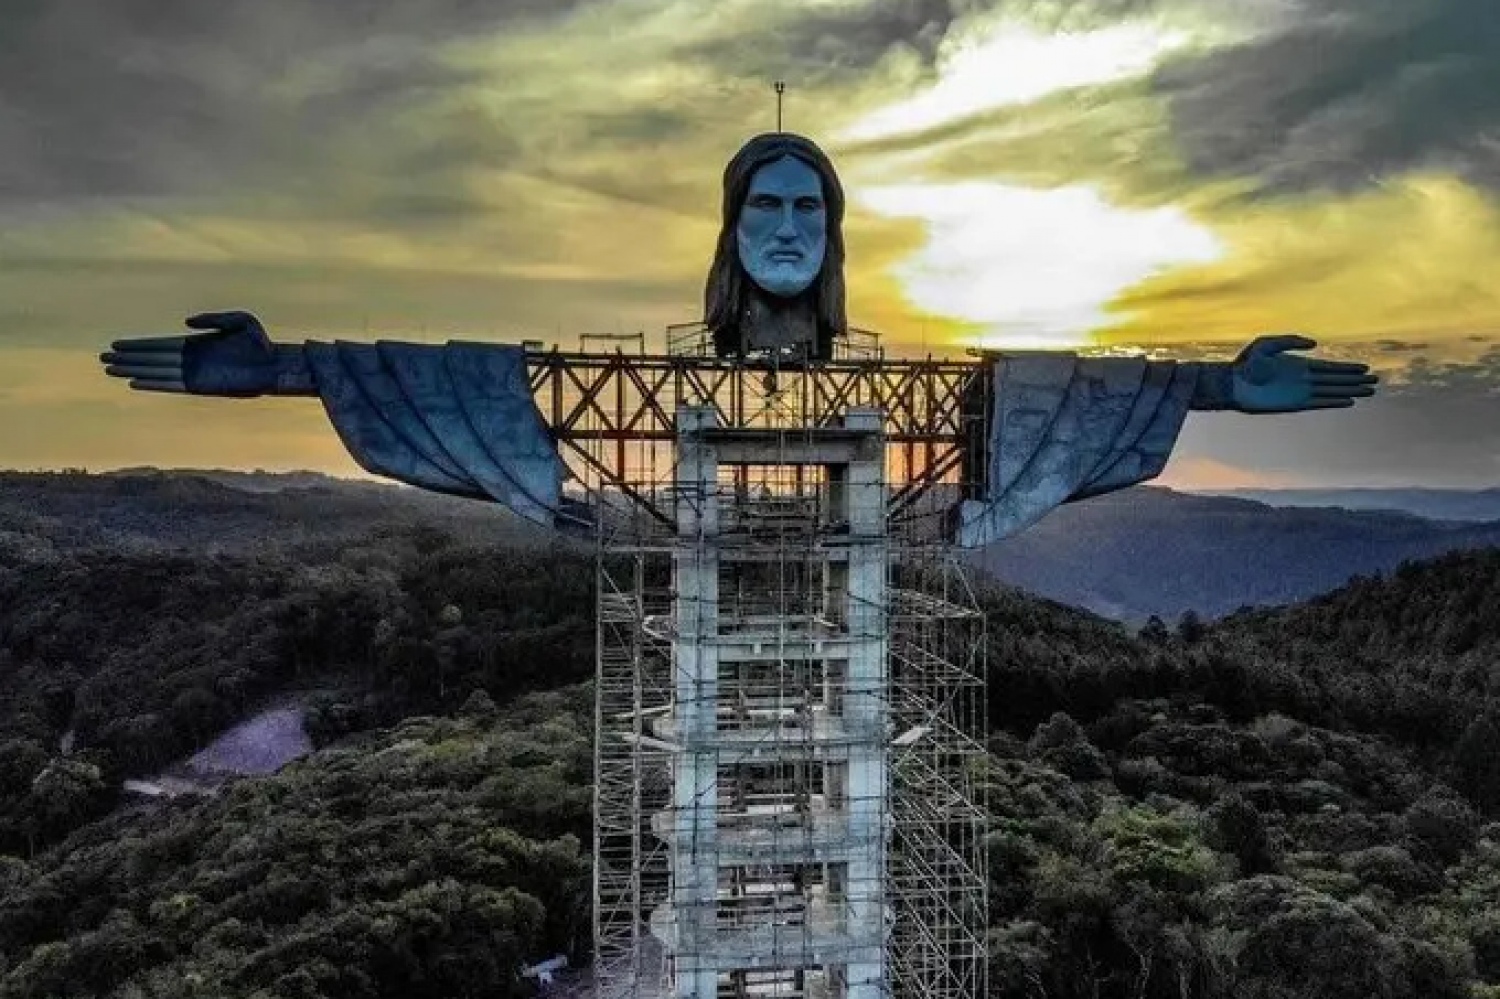 Вышэй, чым у Рыа: паглядзіце, як 43-метровую статую Хрыста будуюць у Бразіліі